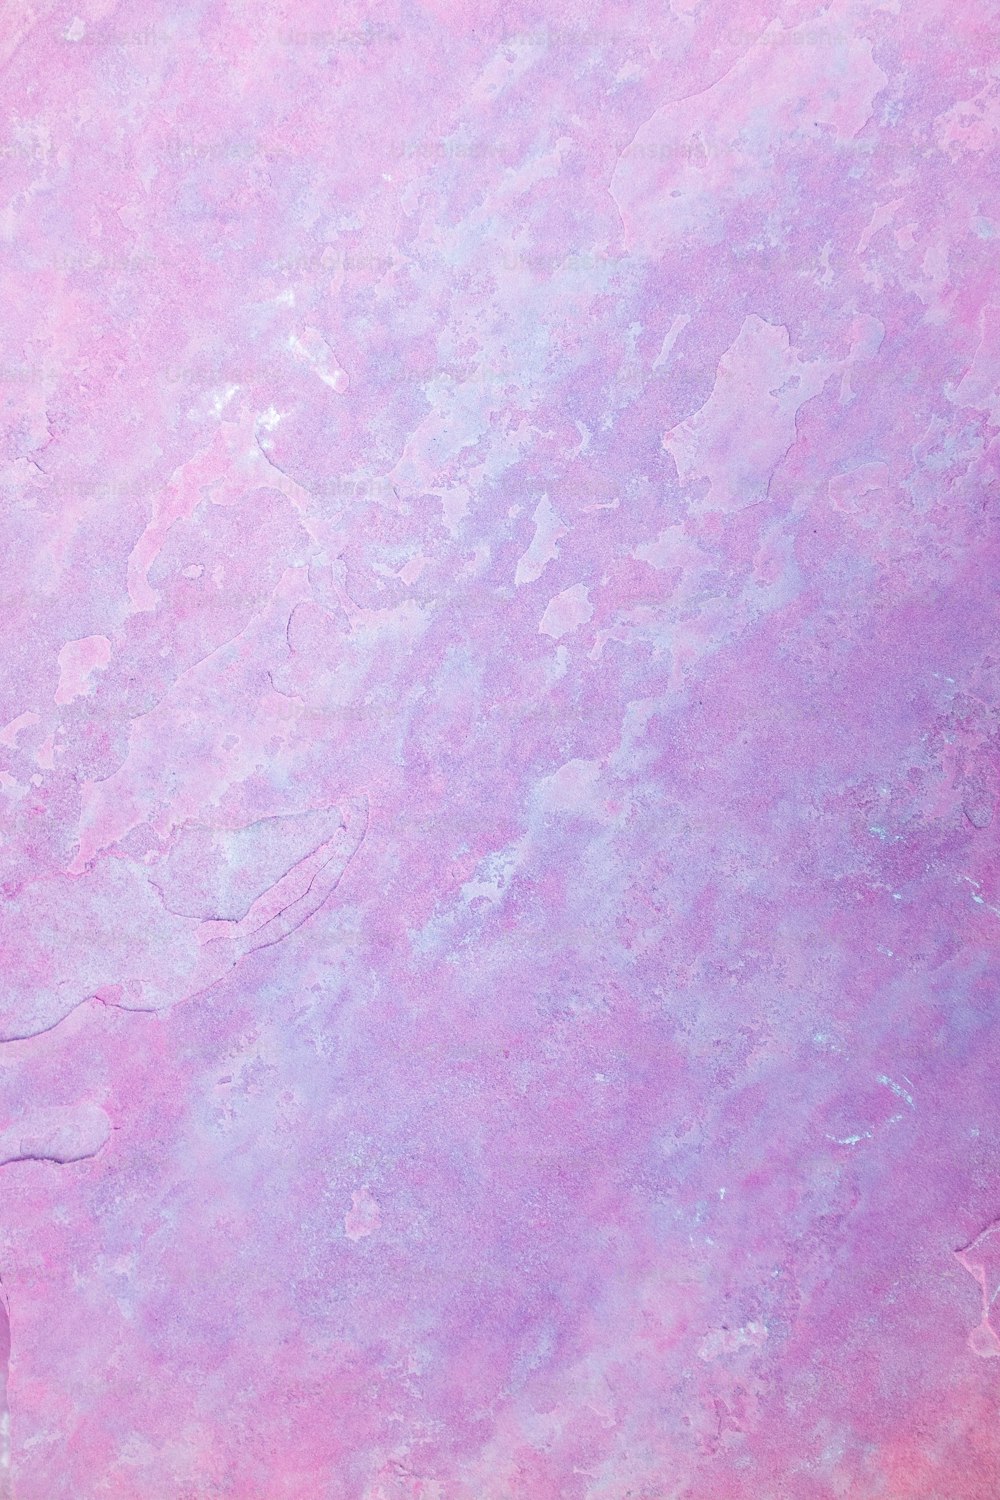 un fond rose et violet avec une bordure blanche